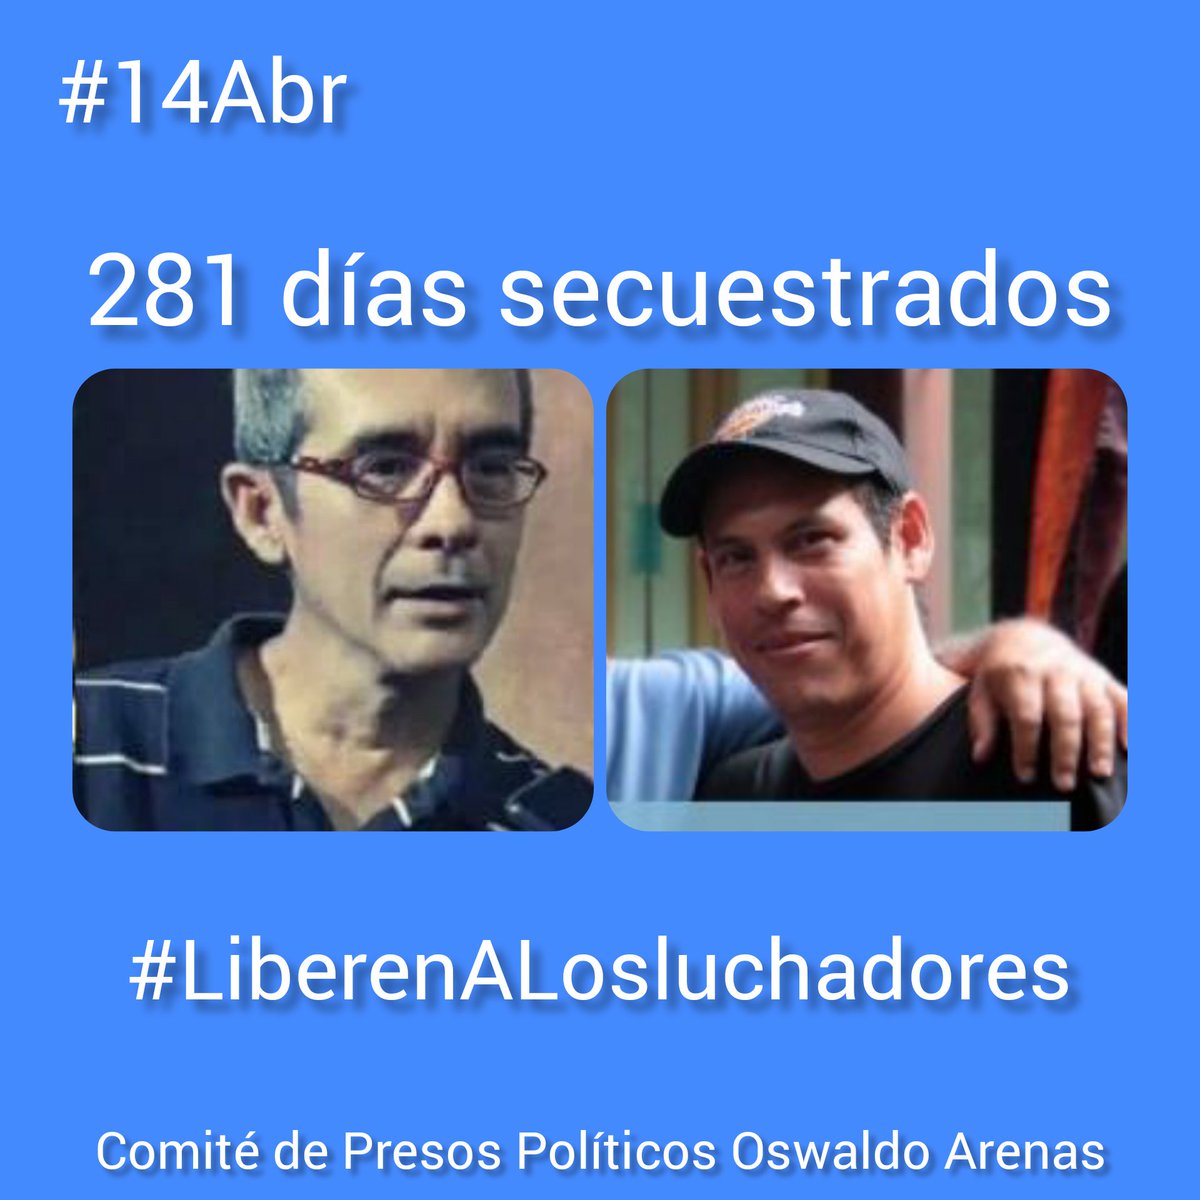 #14Abr #BastaDeInjusticia Reynaldo Cortés y Gabriel Blanco llevan 281 días secuestrados por el Estado Venezolano y en proceso de juicio con un expediente amañado por el juez corrupto José Mascimino Márquez... #LiberenALosLuchadores #SonInocente @volker_turk